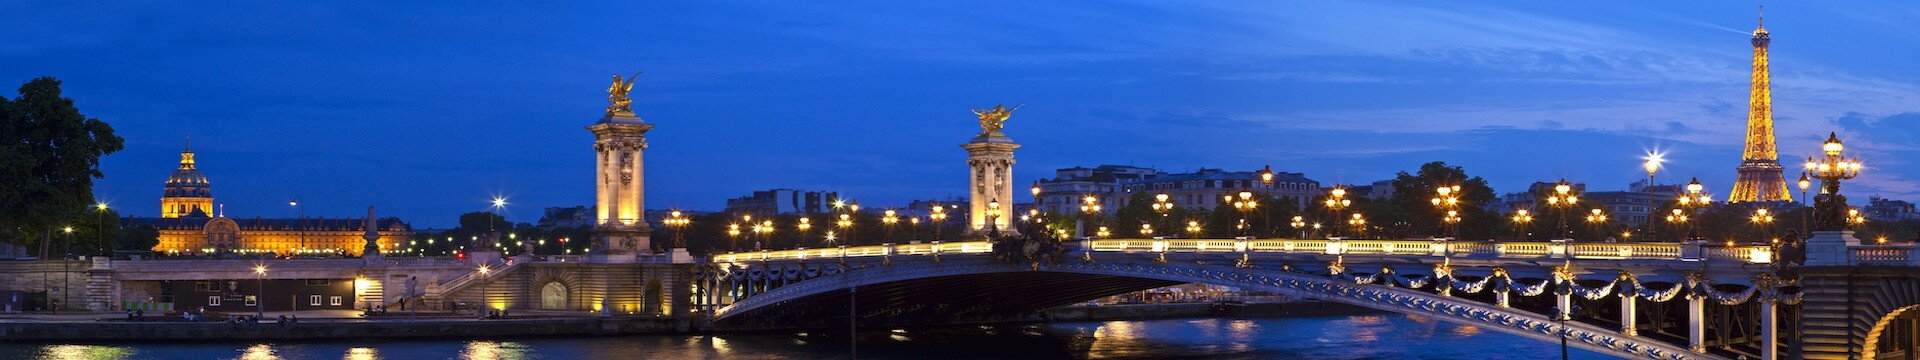 Alexandre Bridge in Paris